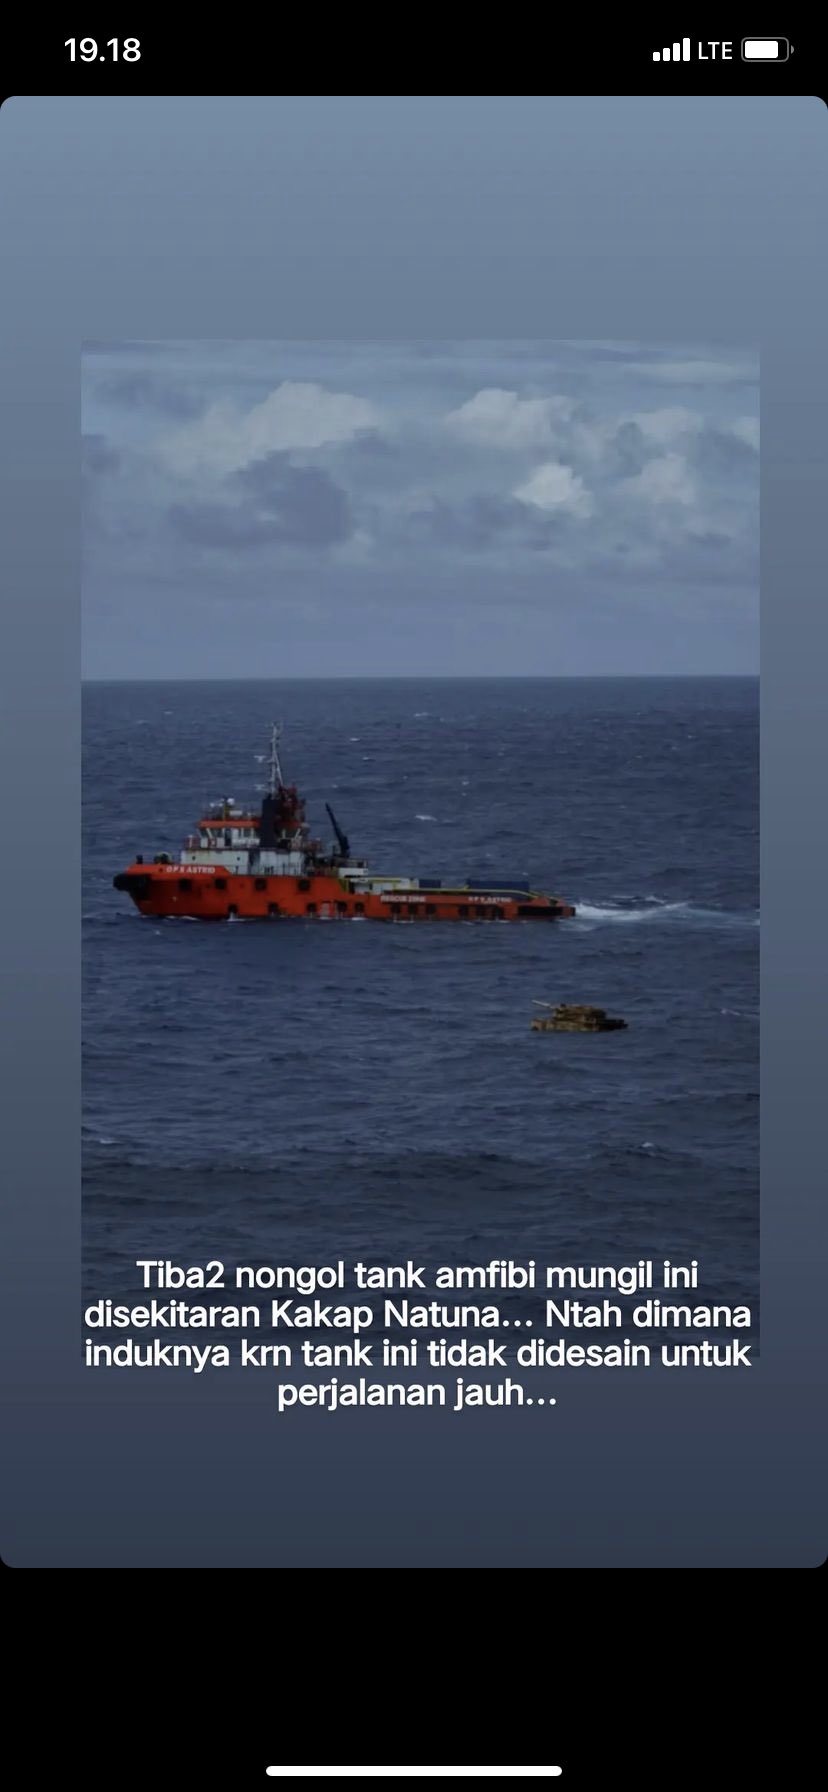 Phát hiện xe tăng bí ẩn thoắt ẩn thoắt hiện nổi trên biển khiến hải quân Indonesia bối rối - Ảnh 2.